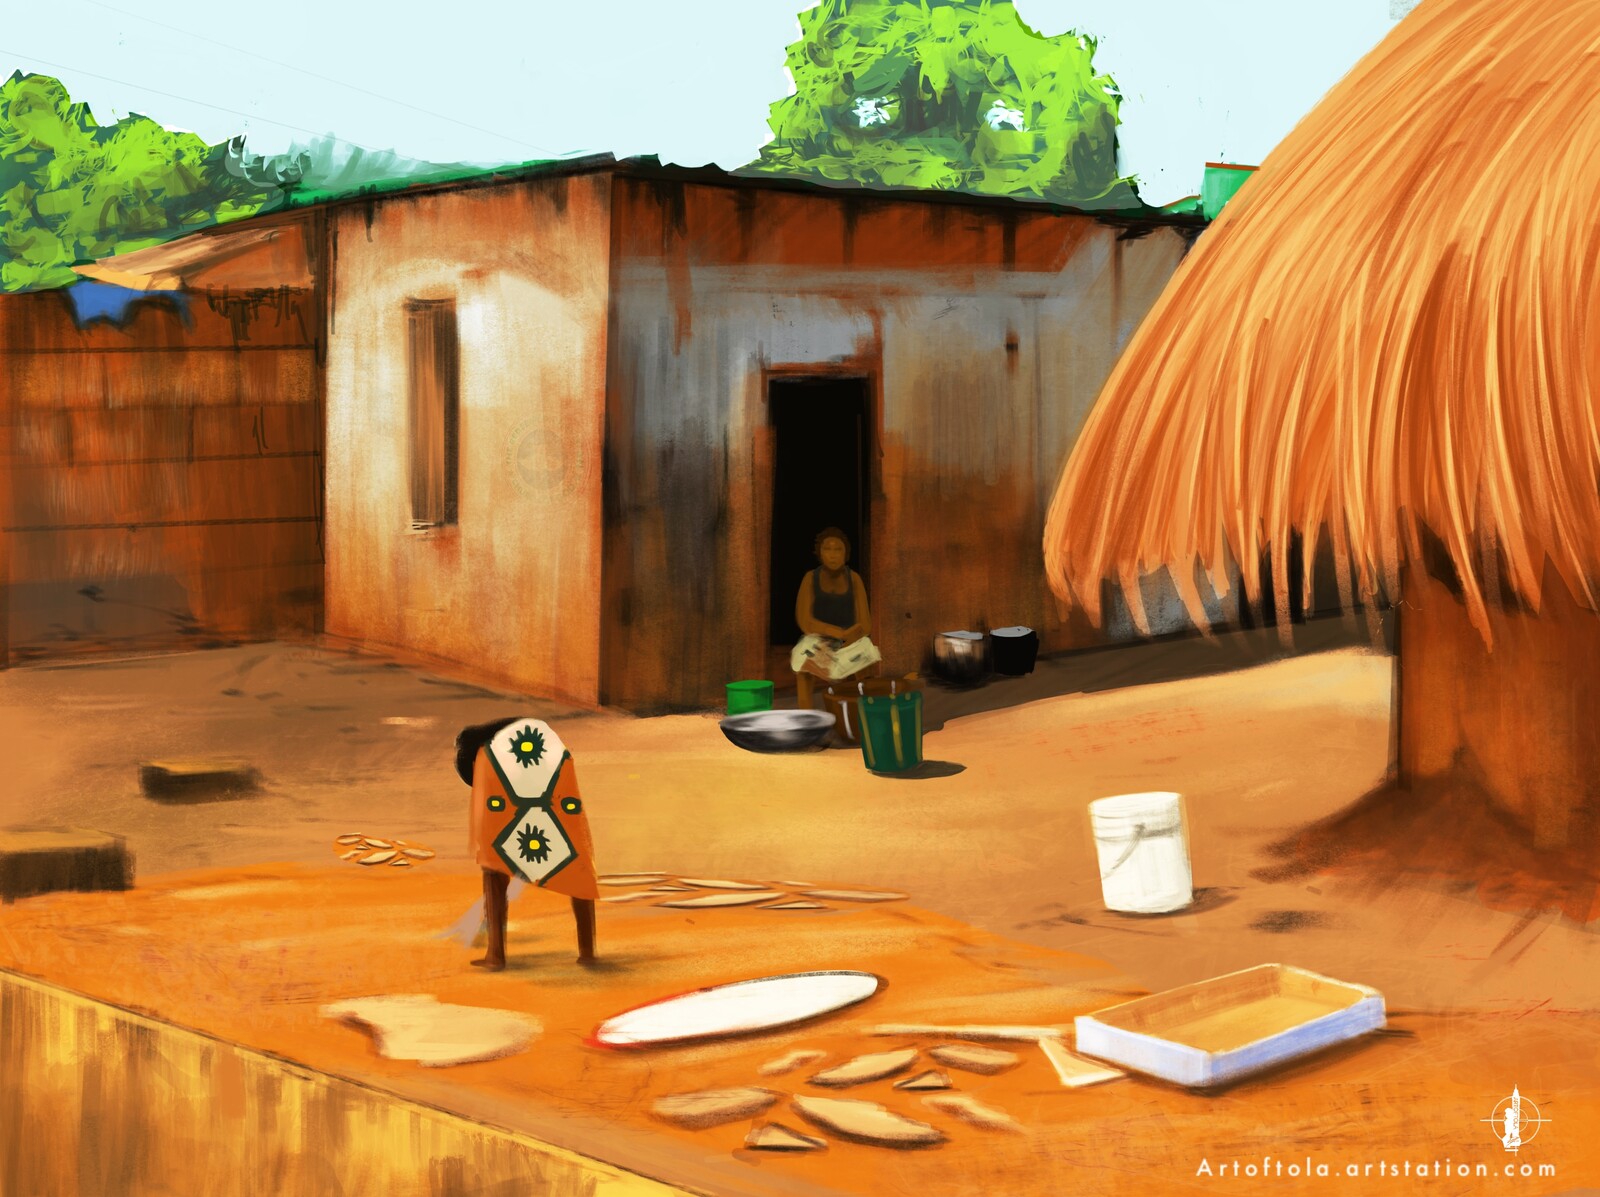 Village - Background Art